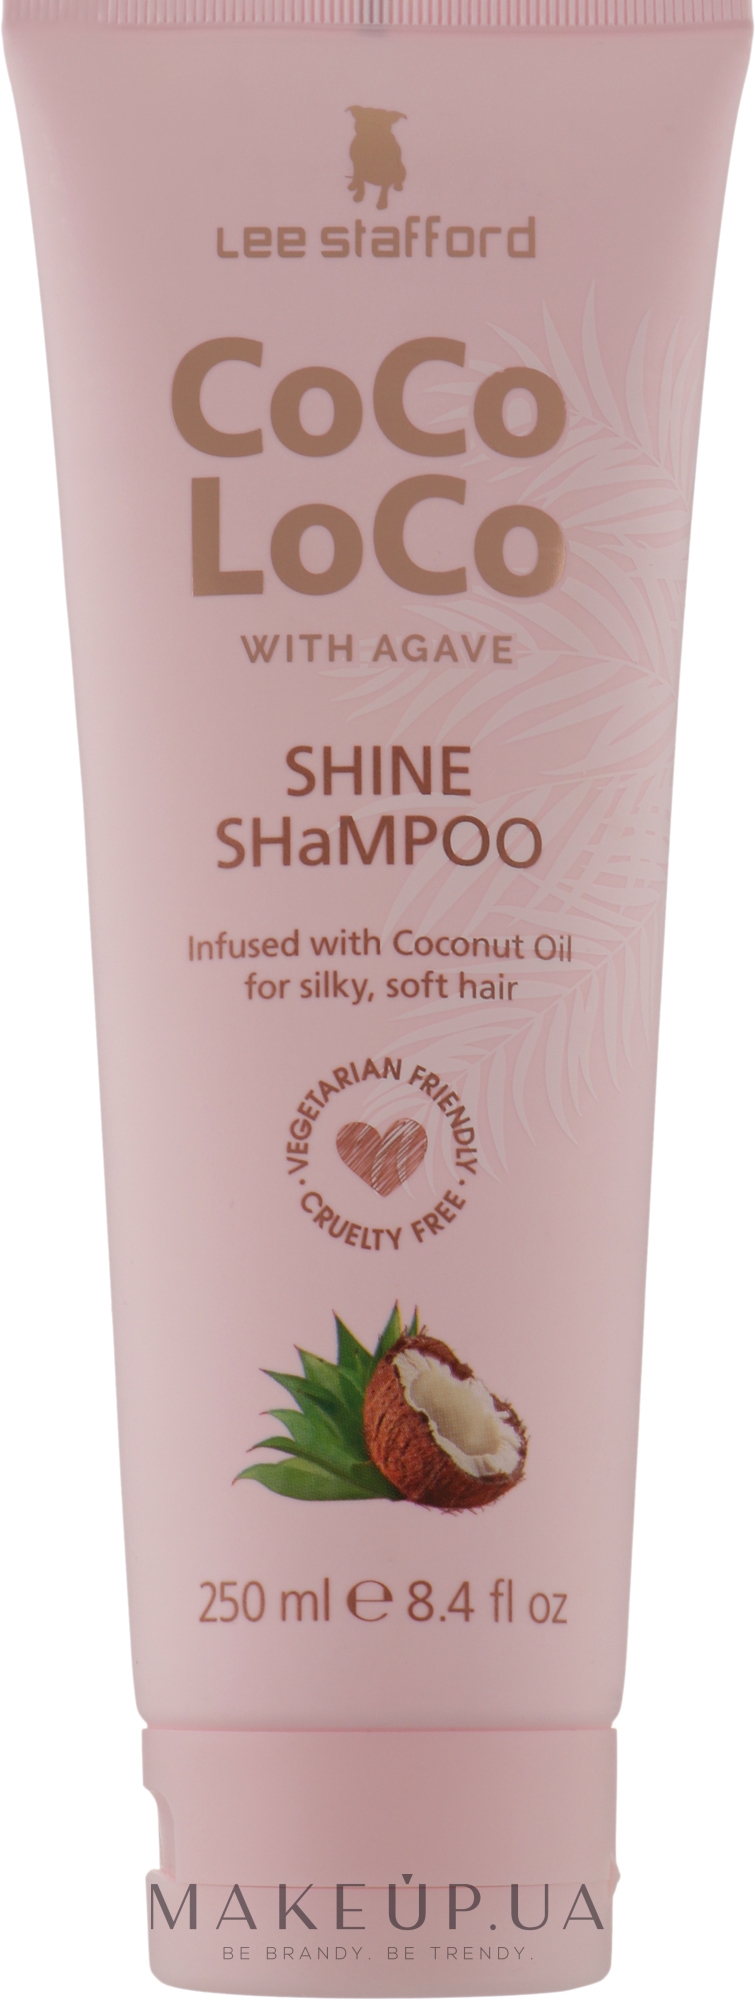 Зволожувальний шампунь для волосся - Lee Stafford Сосо Loco Shine Shampoo with Coconut Oil — фото 250ml